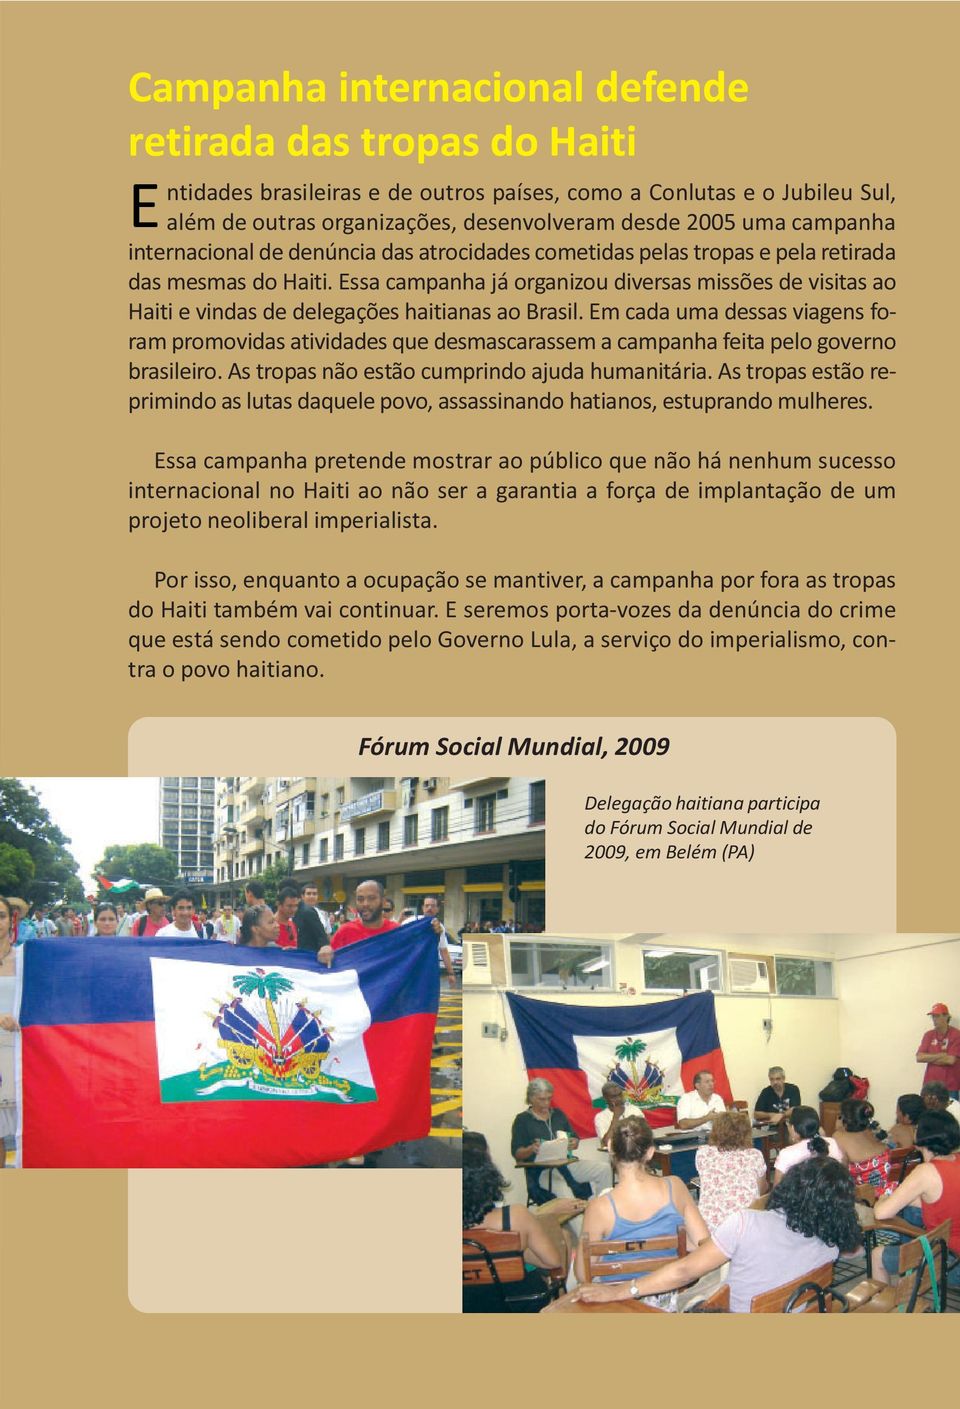 Essa campanha já organizou diversas missões de visitas ao Haiti e vindas de delegações haitianas ao Brasil.